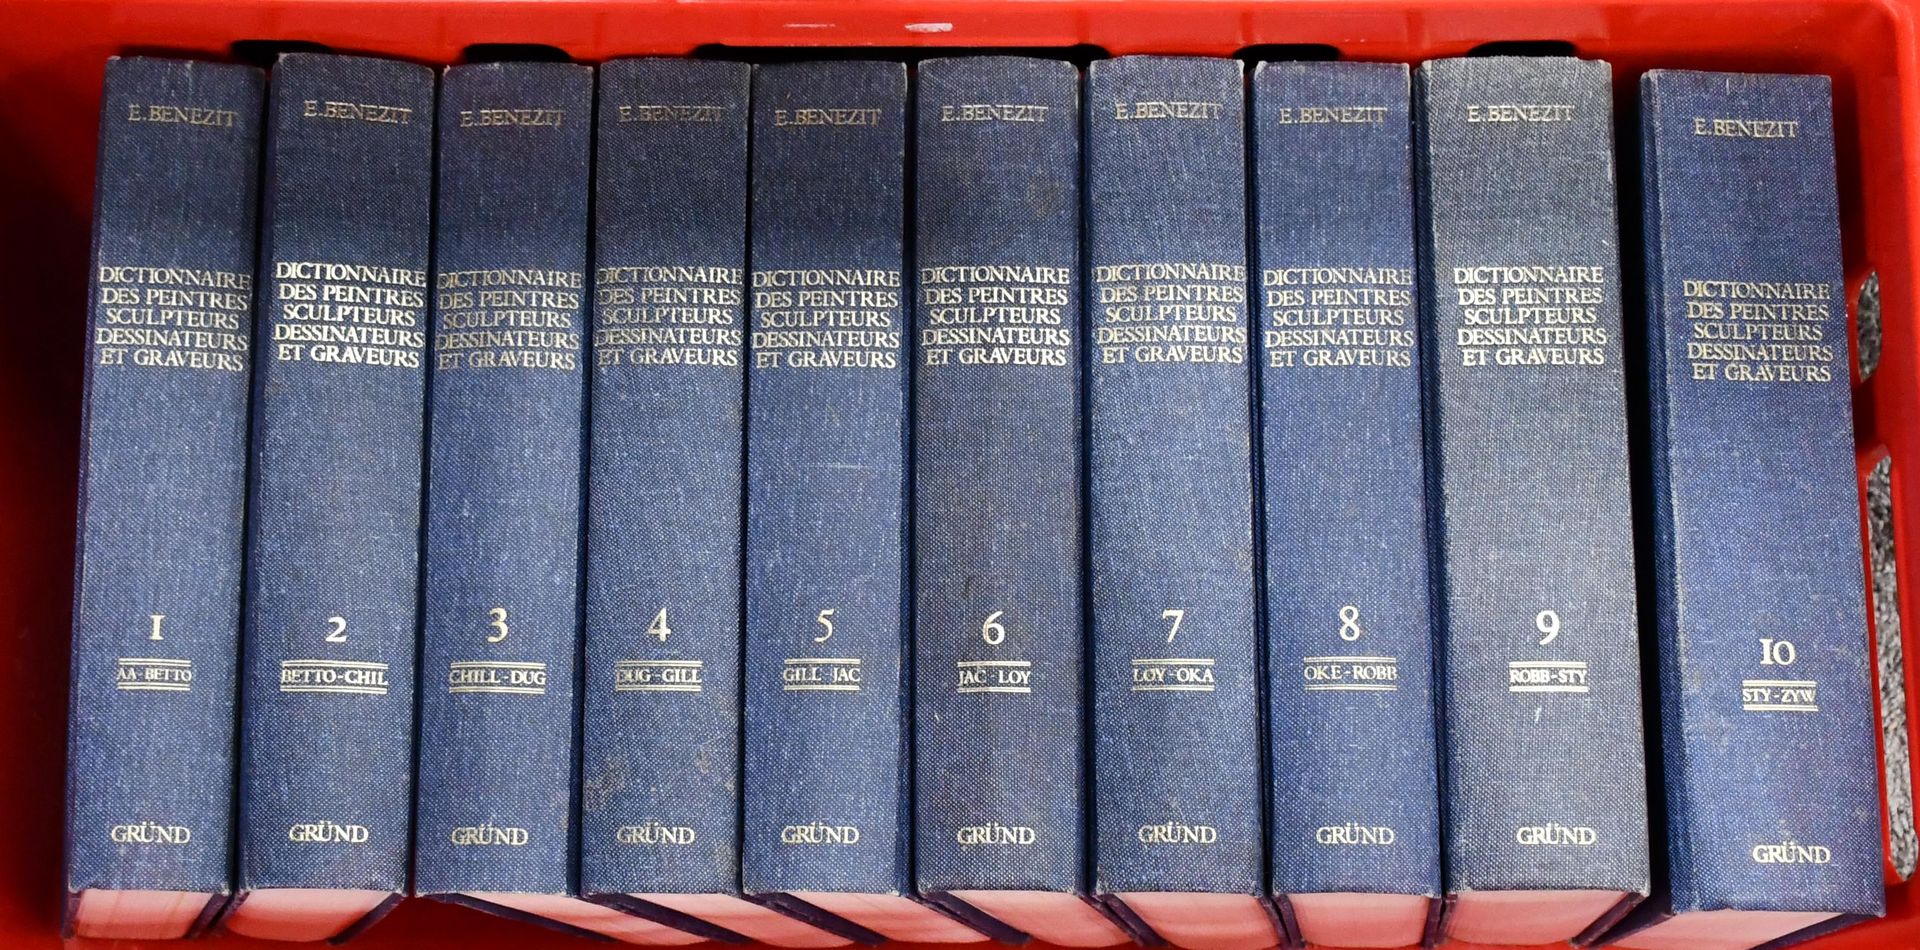 Null Bénézit
Dictionnaires des peintures et sculpteurs, en dix volumes.